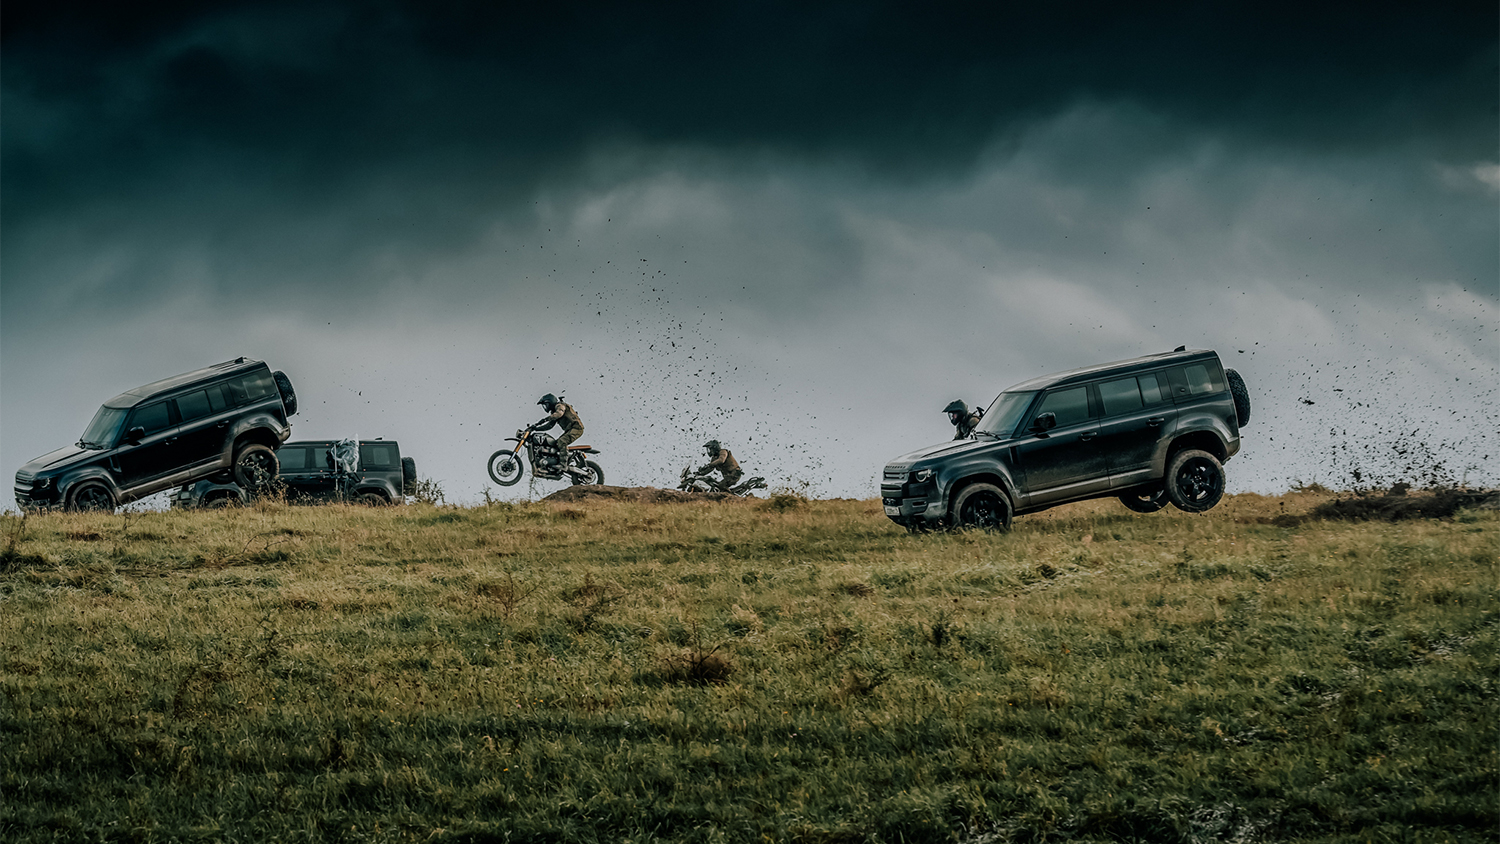 James Bond kiest luchtruim met de nieuwe Land Rover Defender in No Time To die